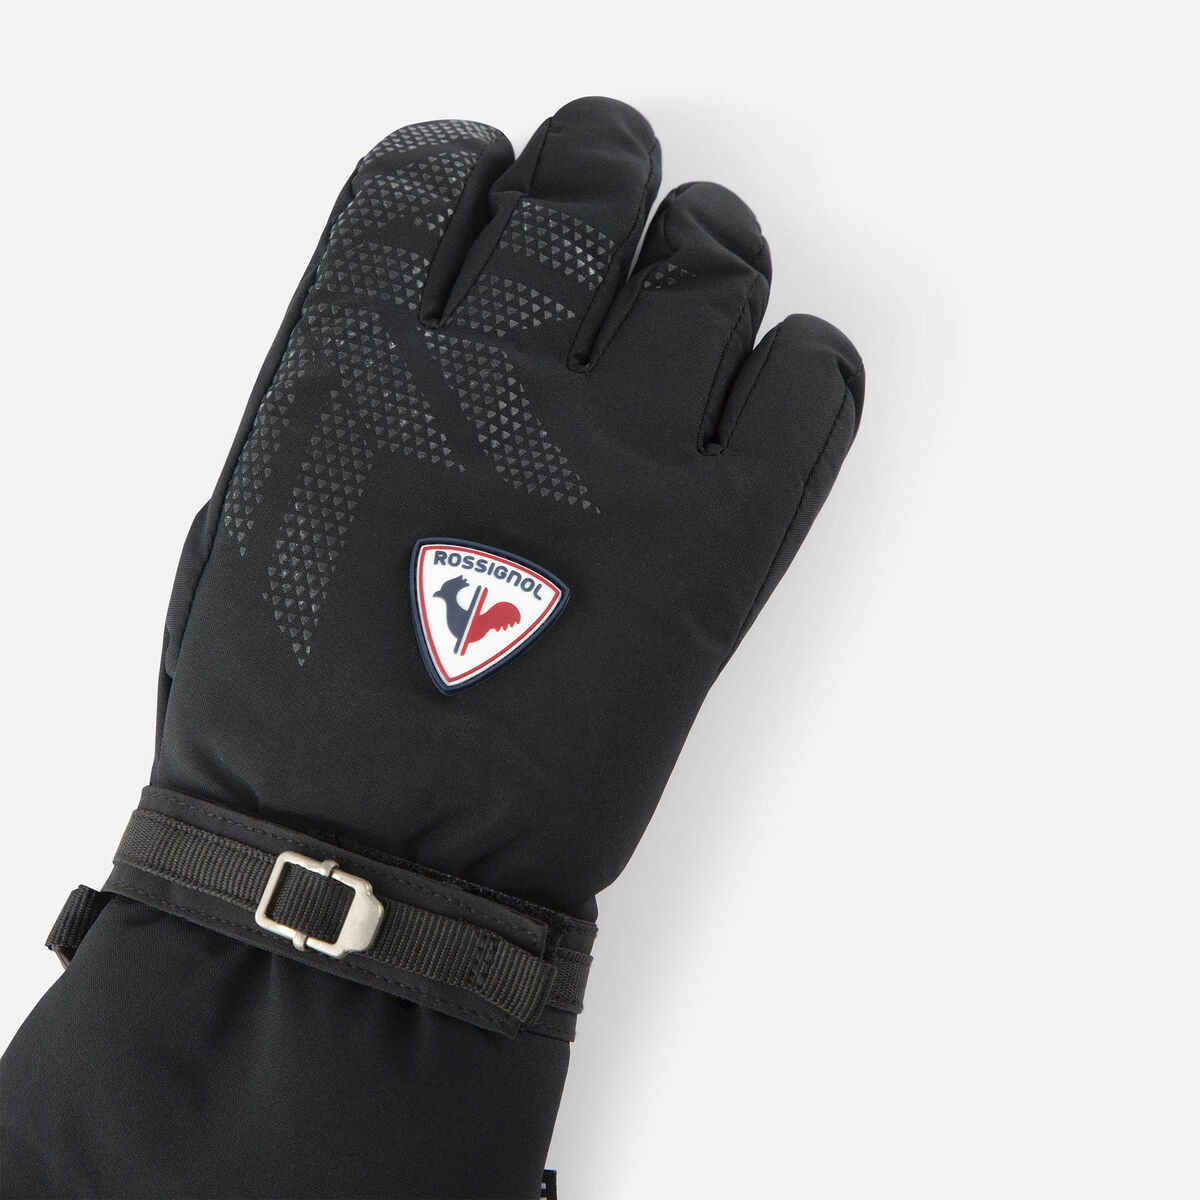 Rossignol Women's Romy IMP'R Ski Gloves Black